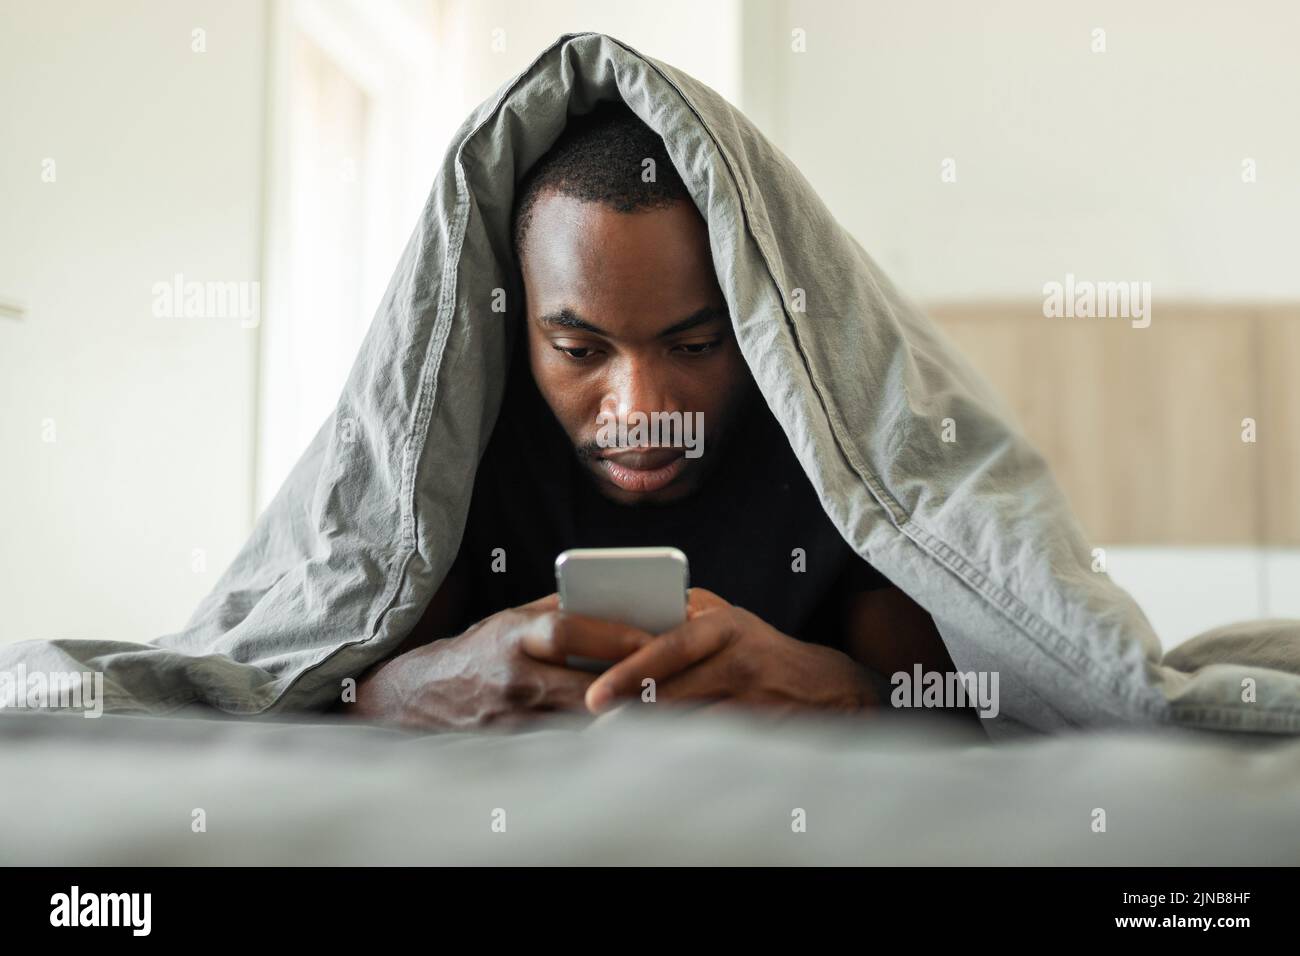 Hombre Afroamericano soñoliento que utiliza el teléfono celular que se encuentra en la cama interior Foto de stock